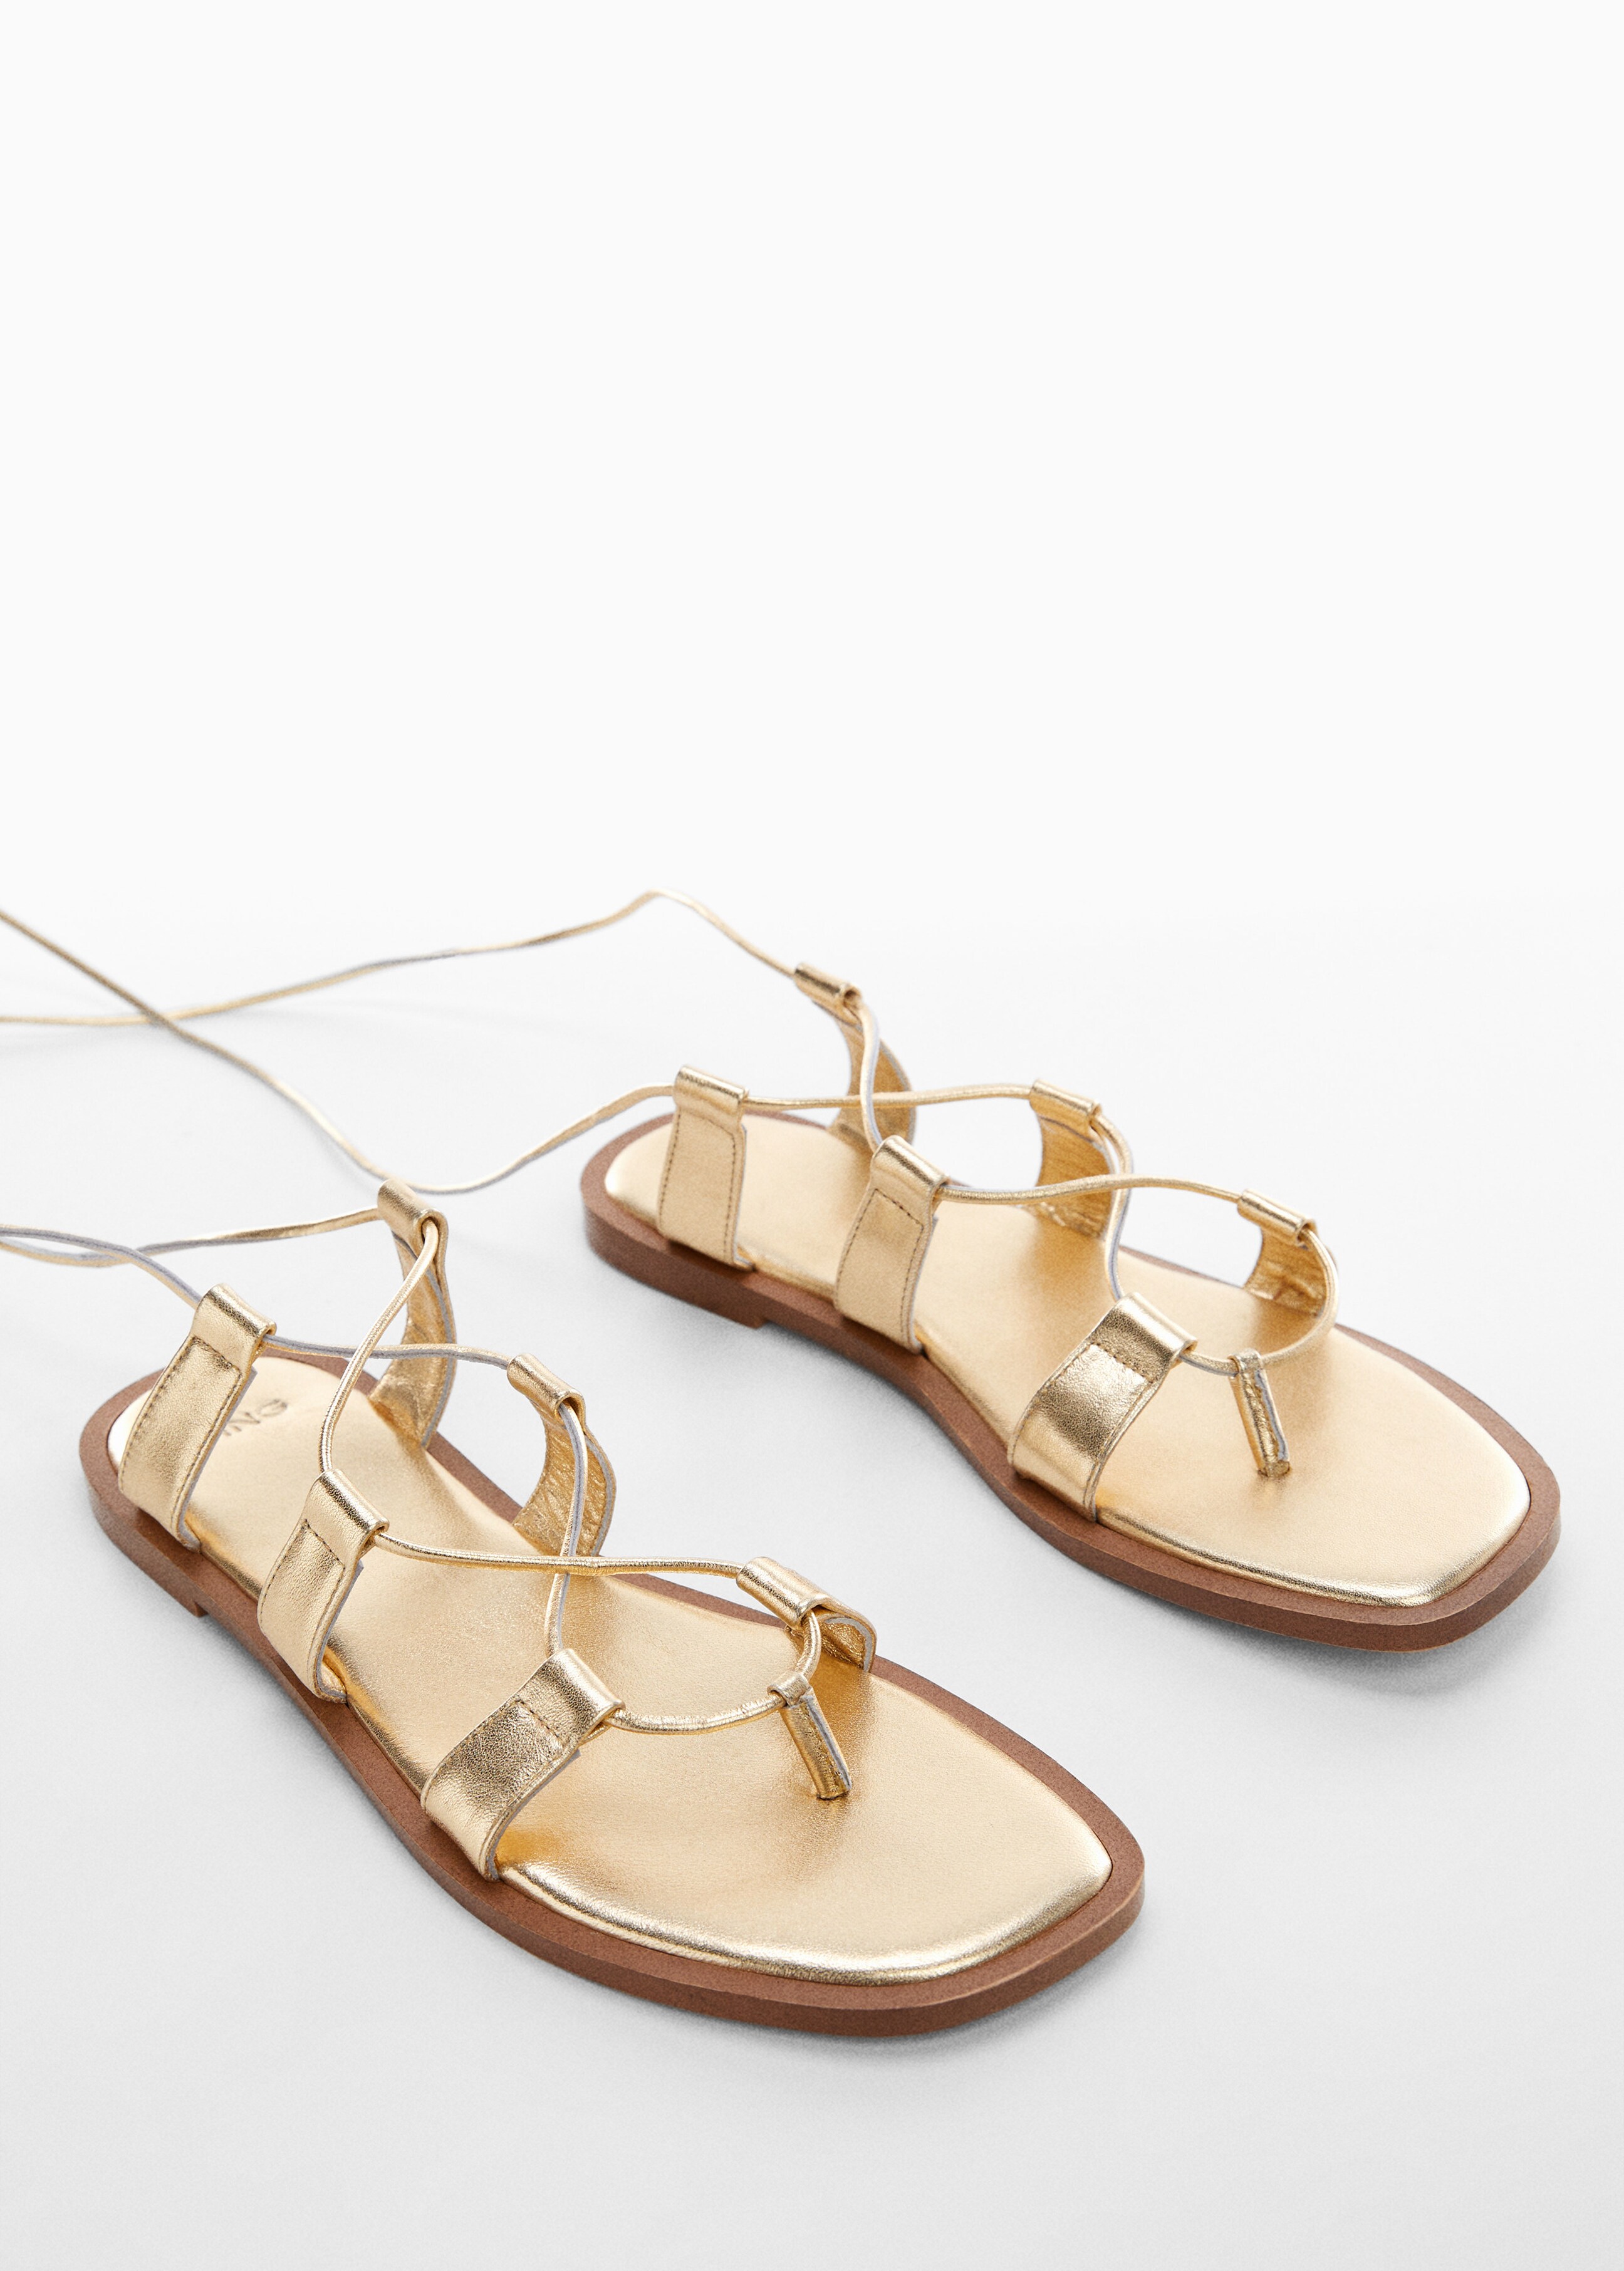 Metallic straps sandals - Medium plane